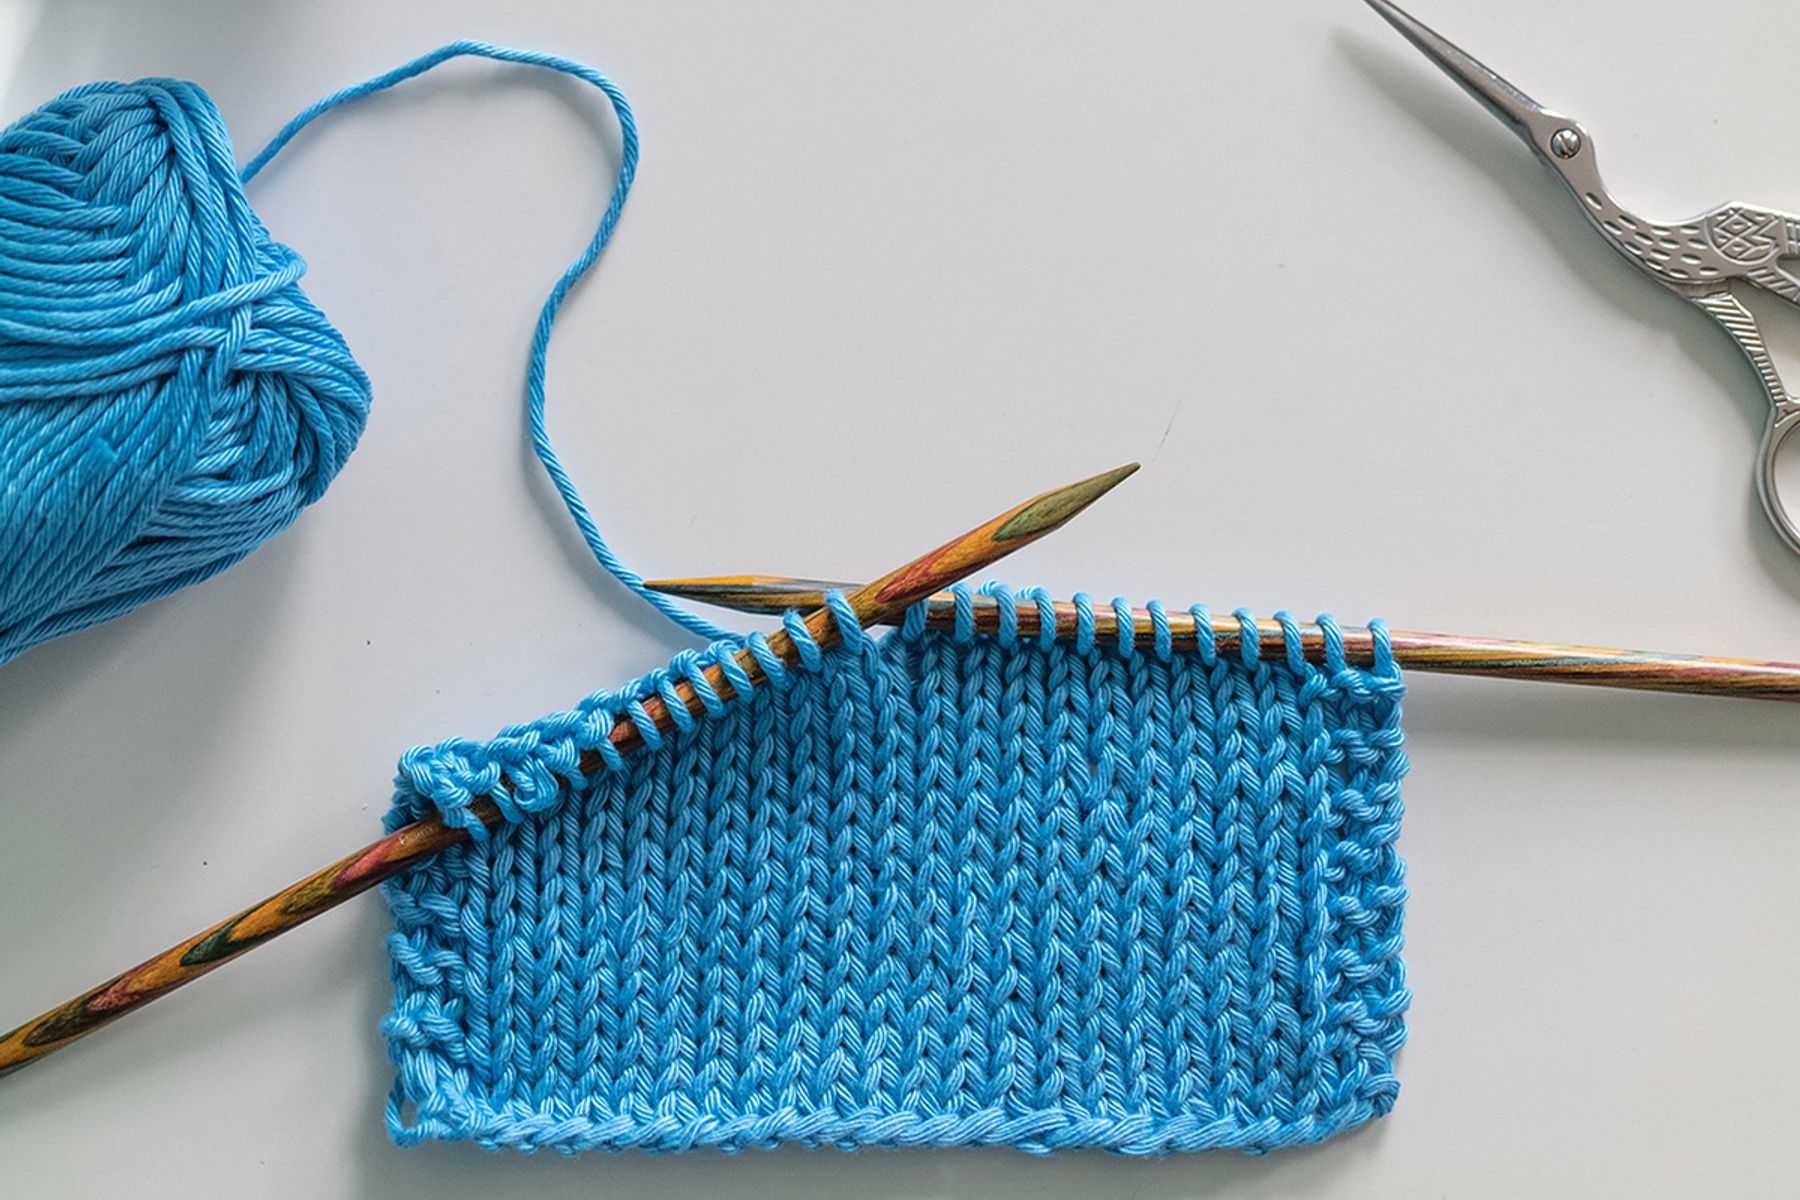 Bước đầu tiên trong cách móc khăn len nam chính là đan hàng gầy